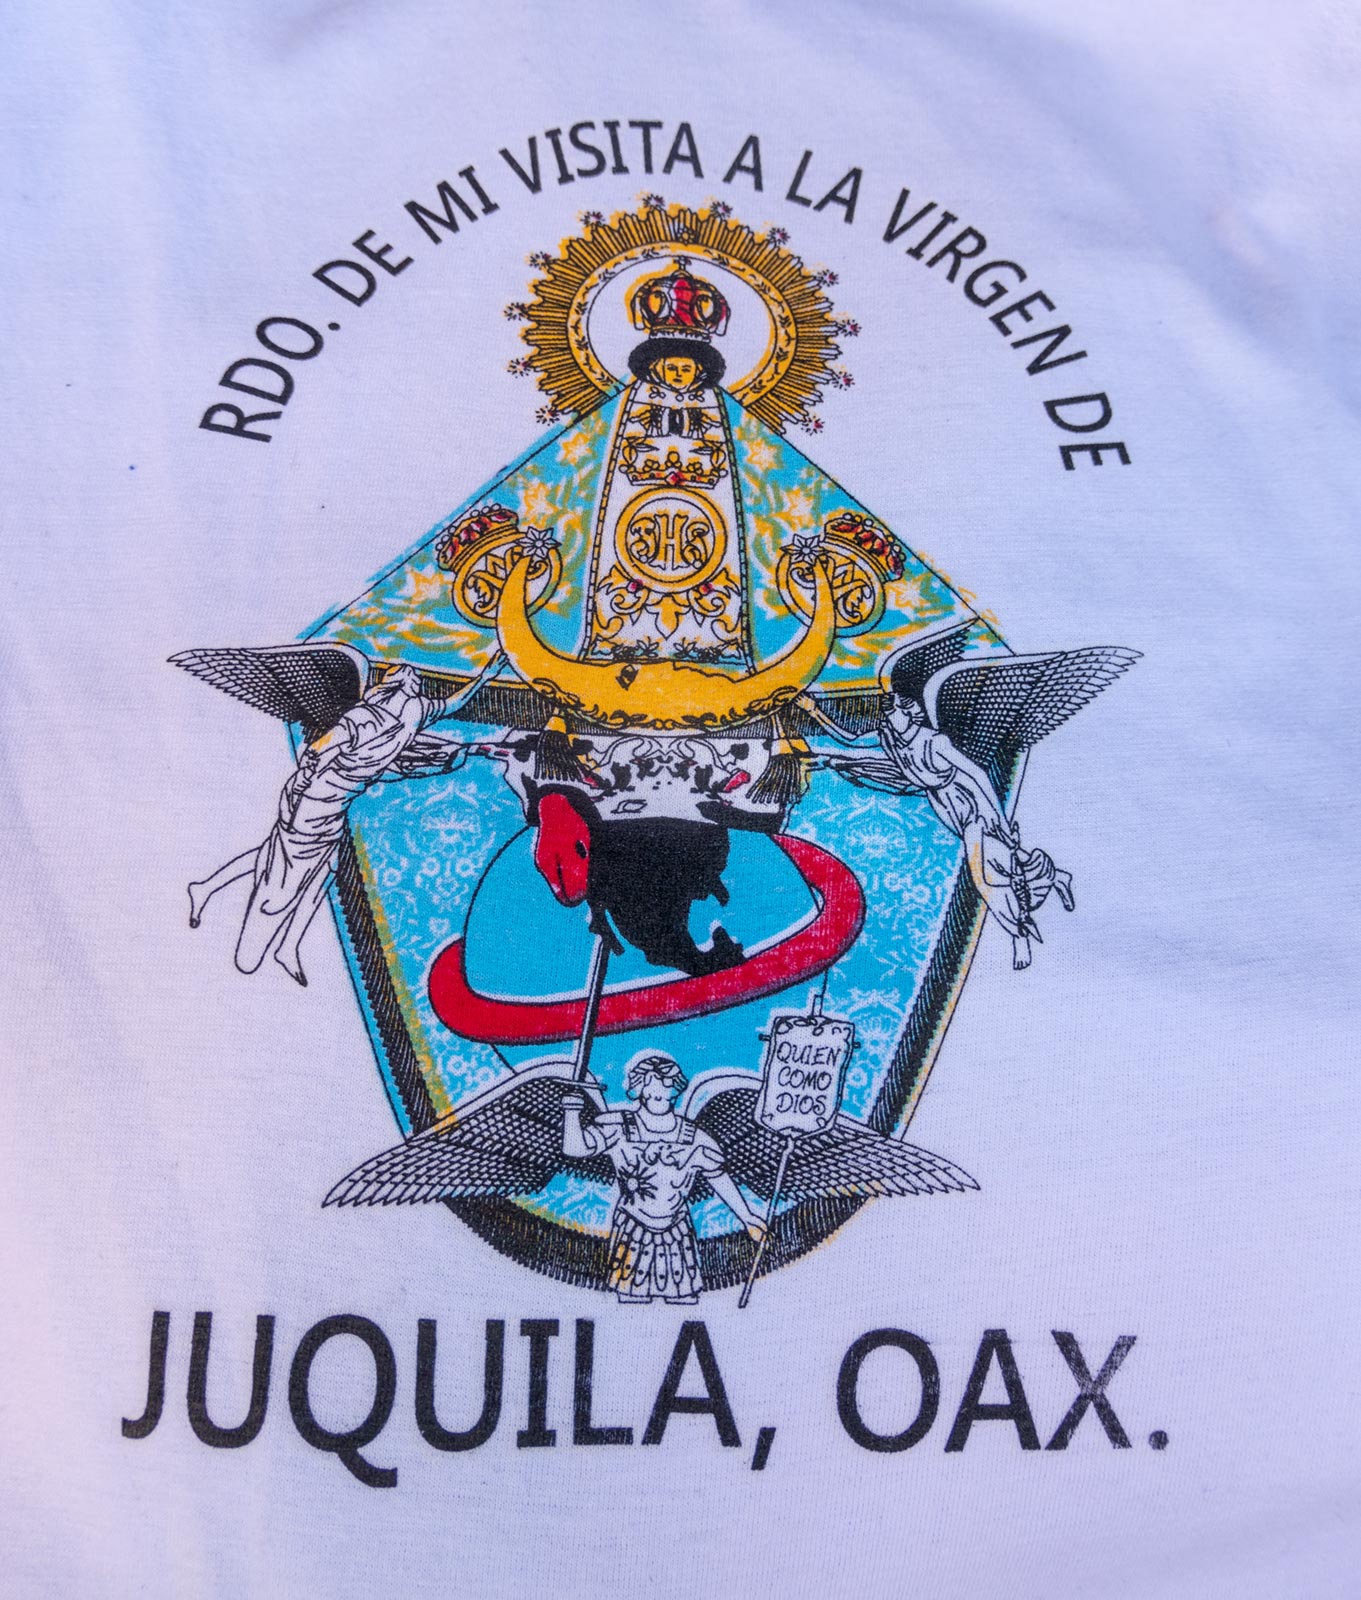 Bild der wunderbaren Statue der Jungfrau Maria auf T-Shirt, zum Verkauf auf dem Markt in der Nähe der Kirche der Jungfrau Maria, Juquila